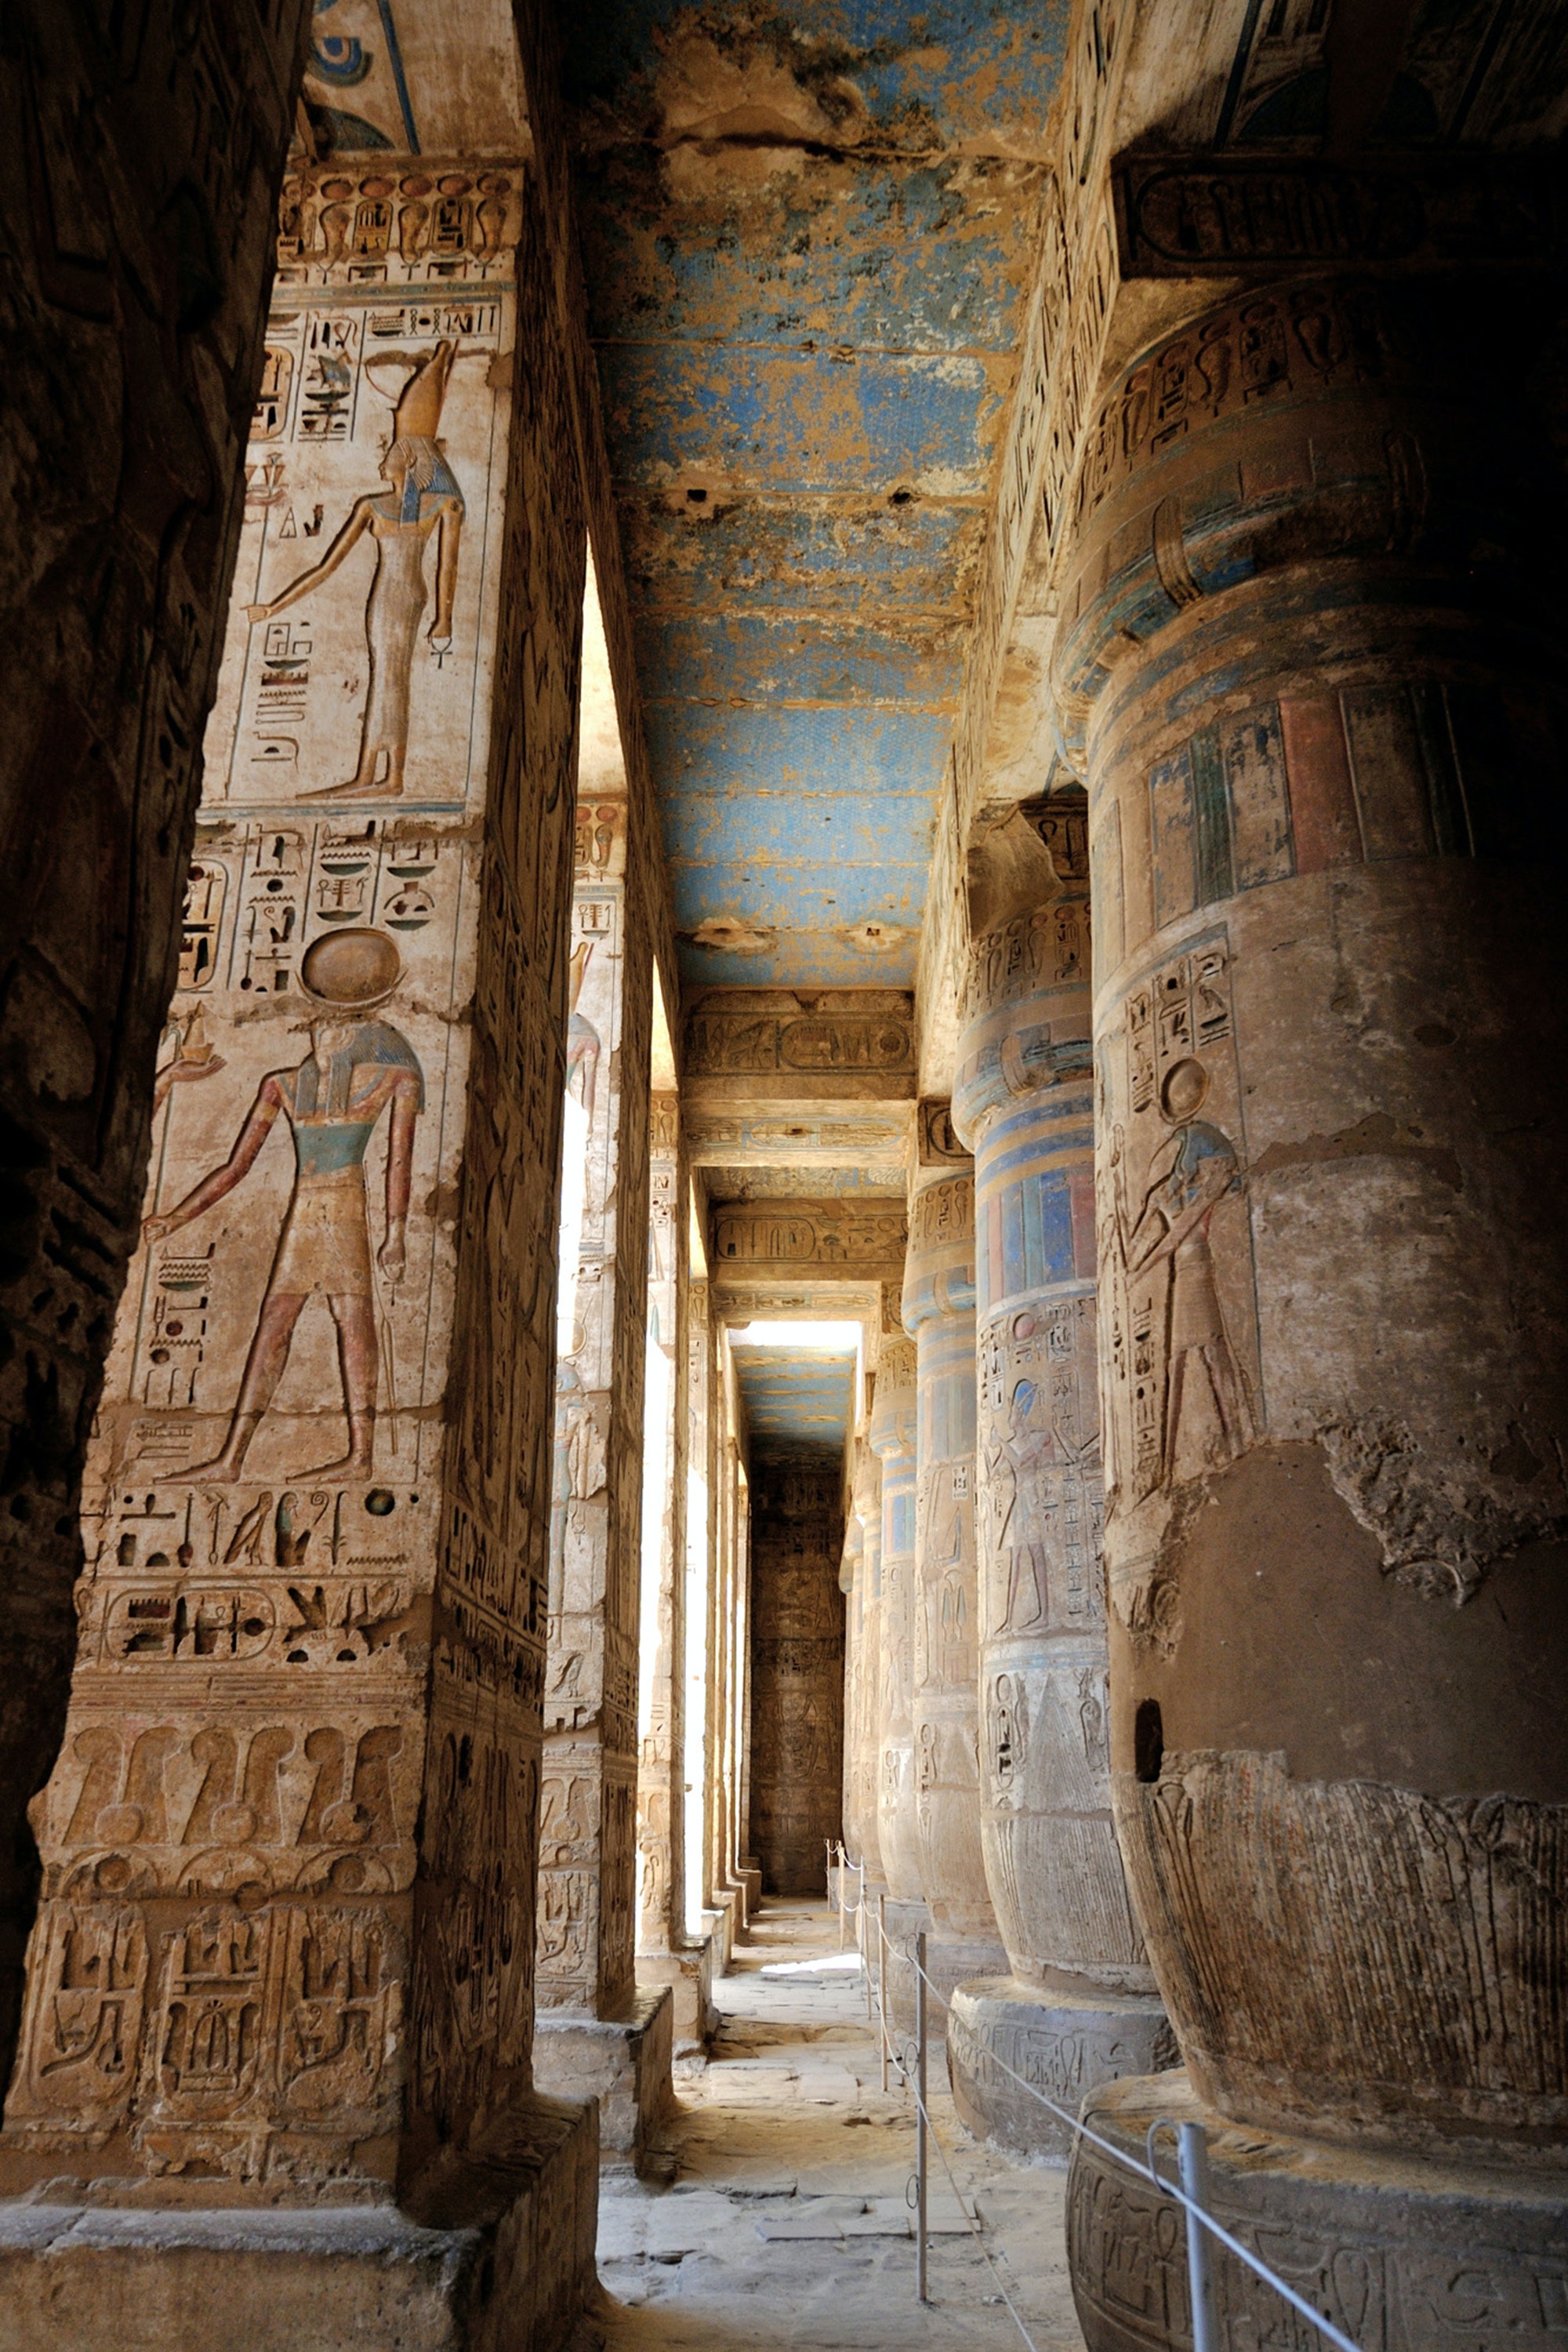 Egypt 4K Wallpapers